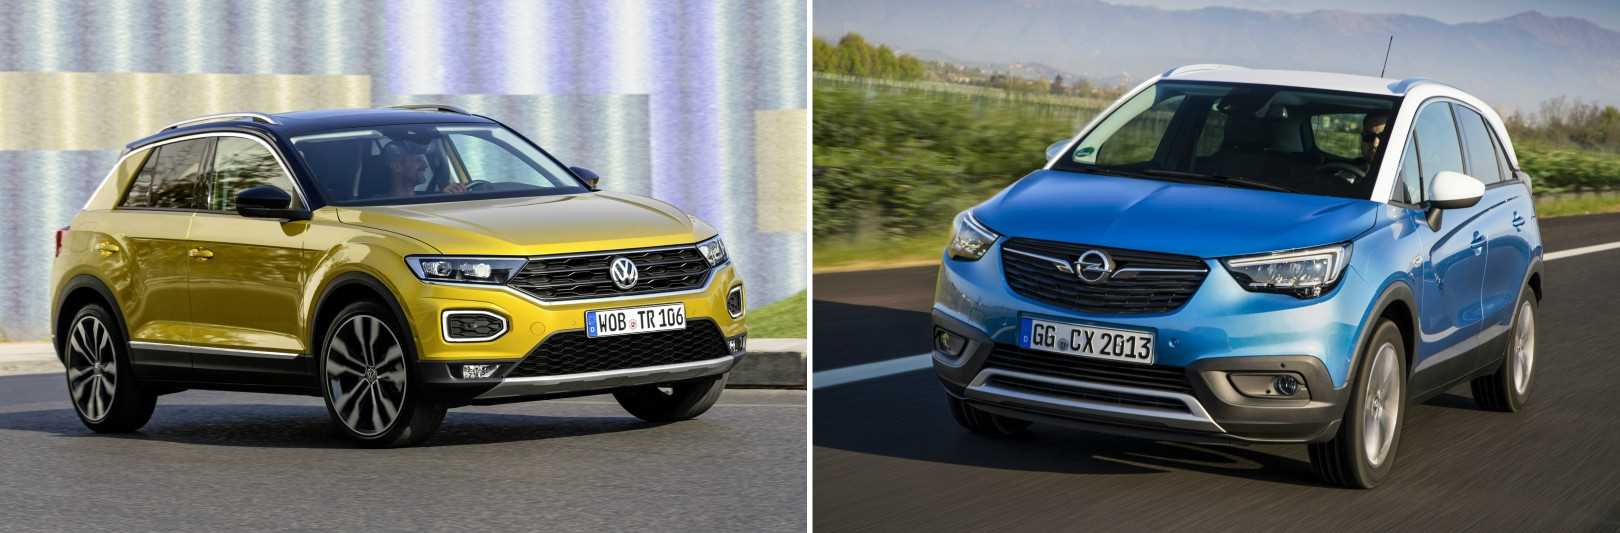 Volkswagen T-Roc vs. Opel Crossland X 2017 (vergelijking)